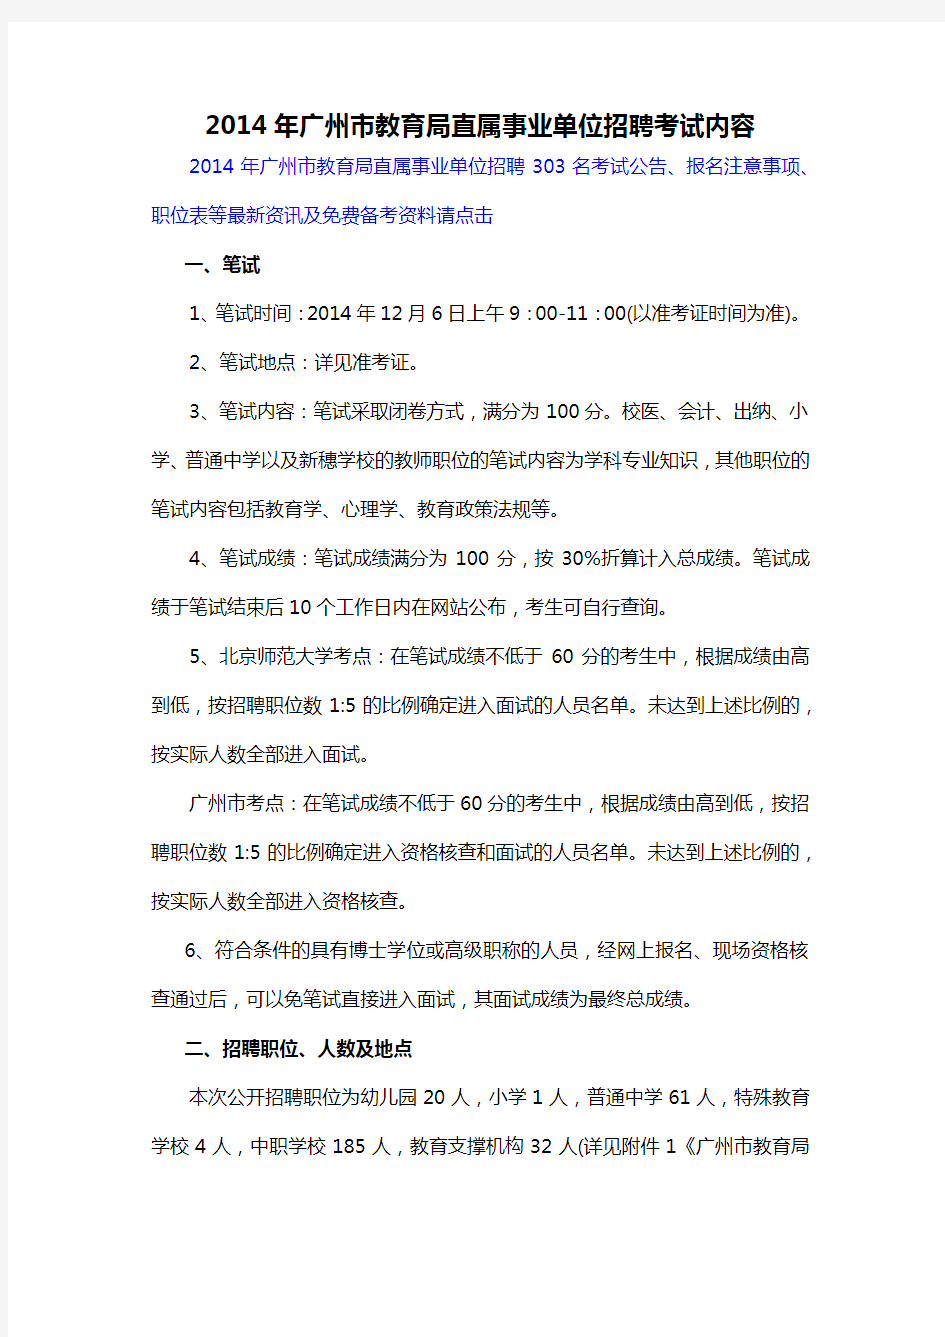 2014年广州市教育局直属事业单位招聘考试内容